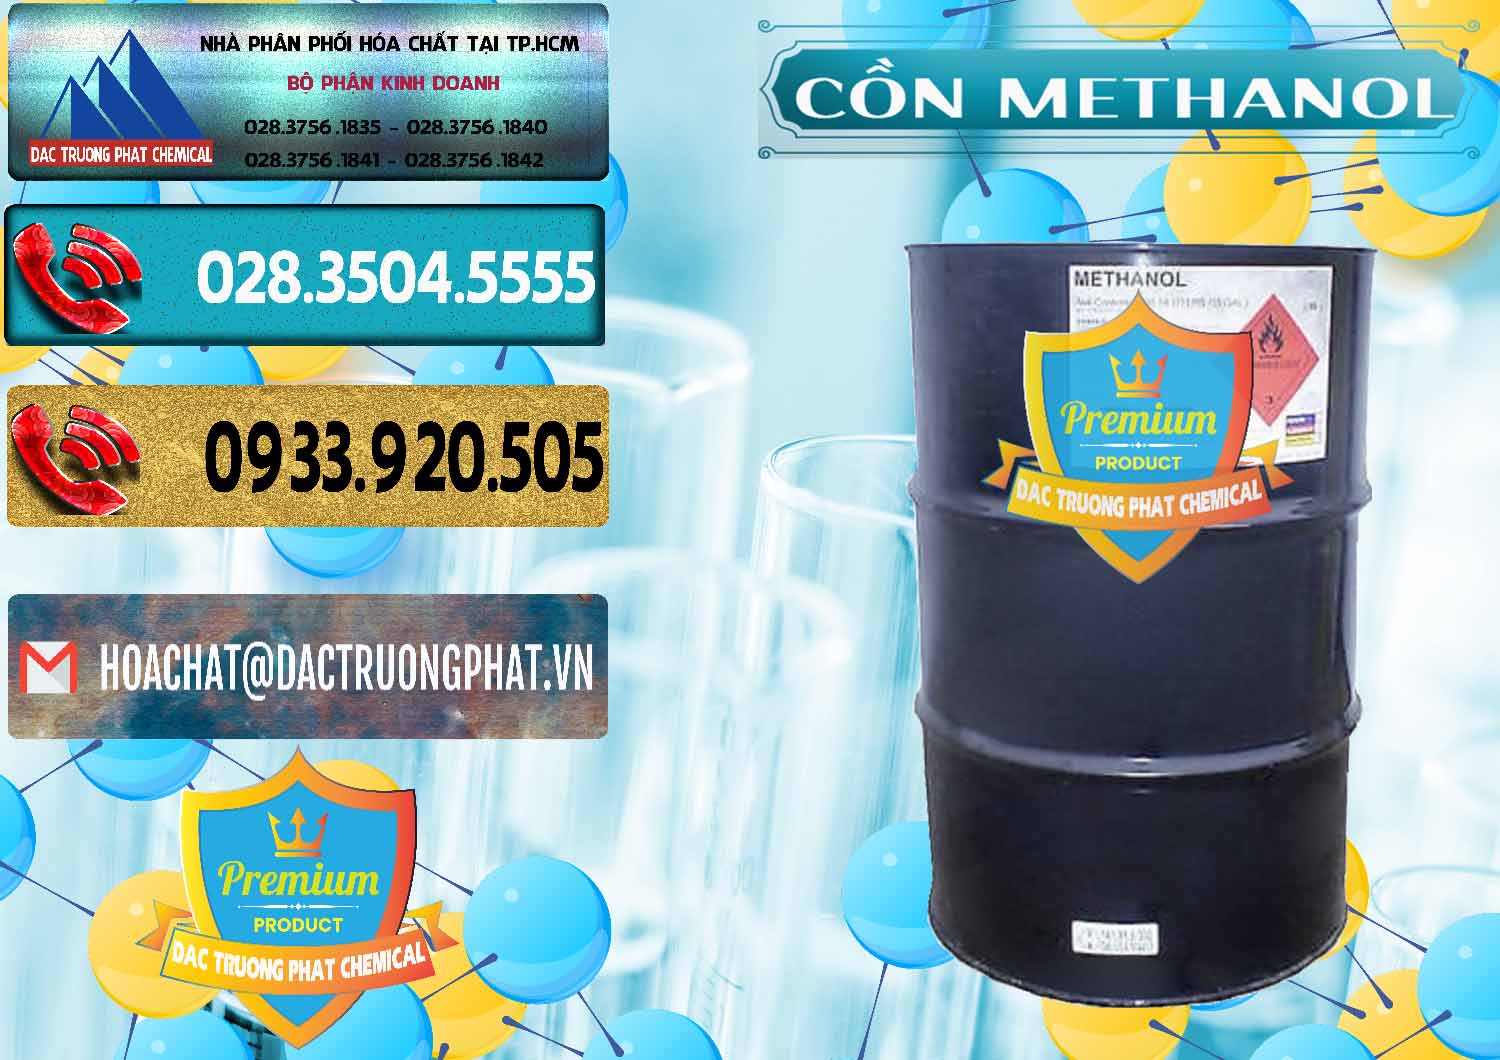 Cty phân phối - bán Cồn Methanol - Methyl Alcohol Mã Lai Malaysia - 0331 - Phân phối và cung cấp hóa chất tại TP.HCM - hoachatdetnhuom.com